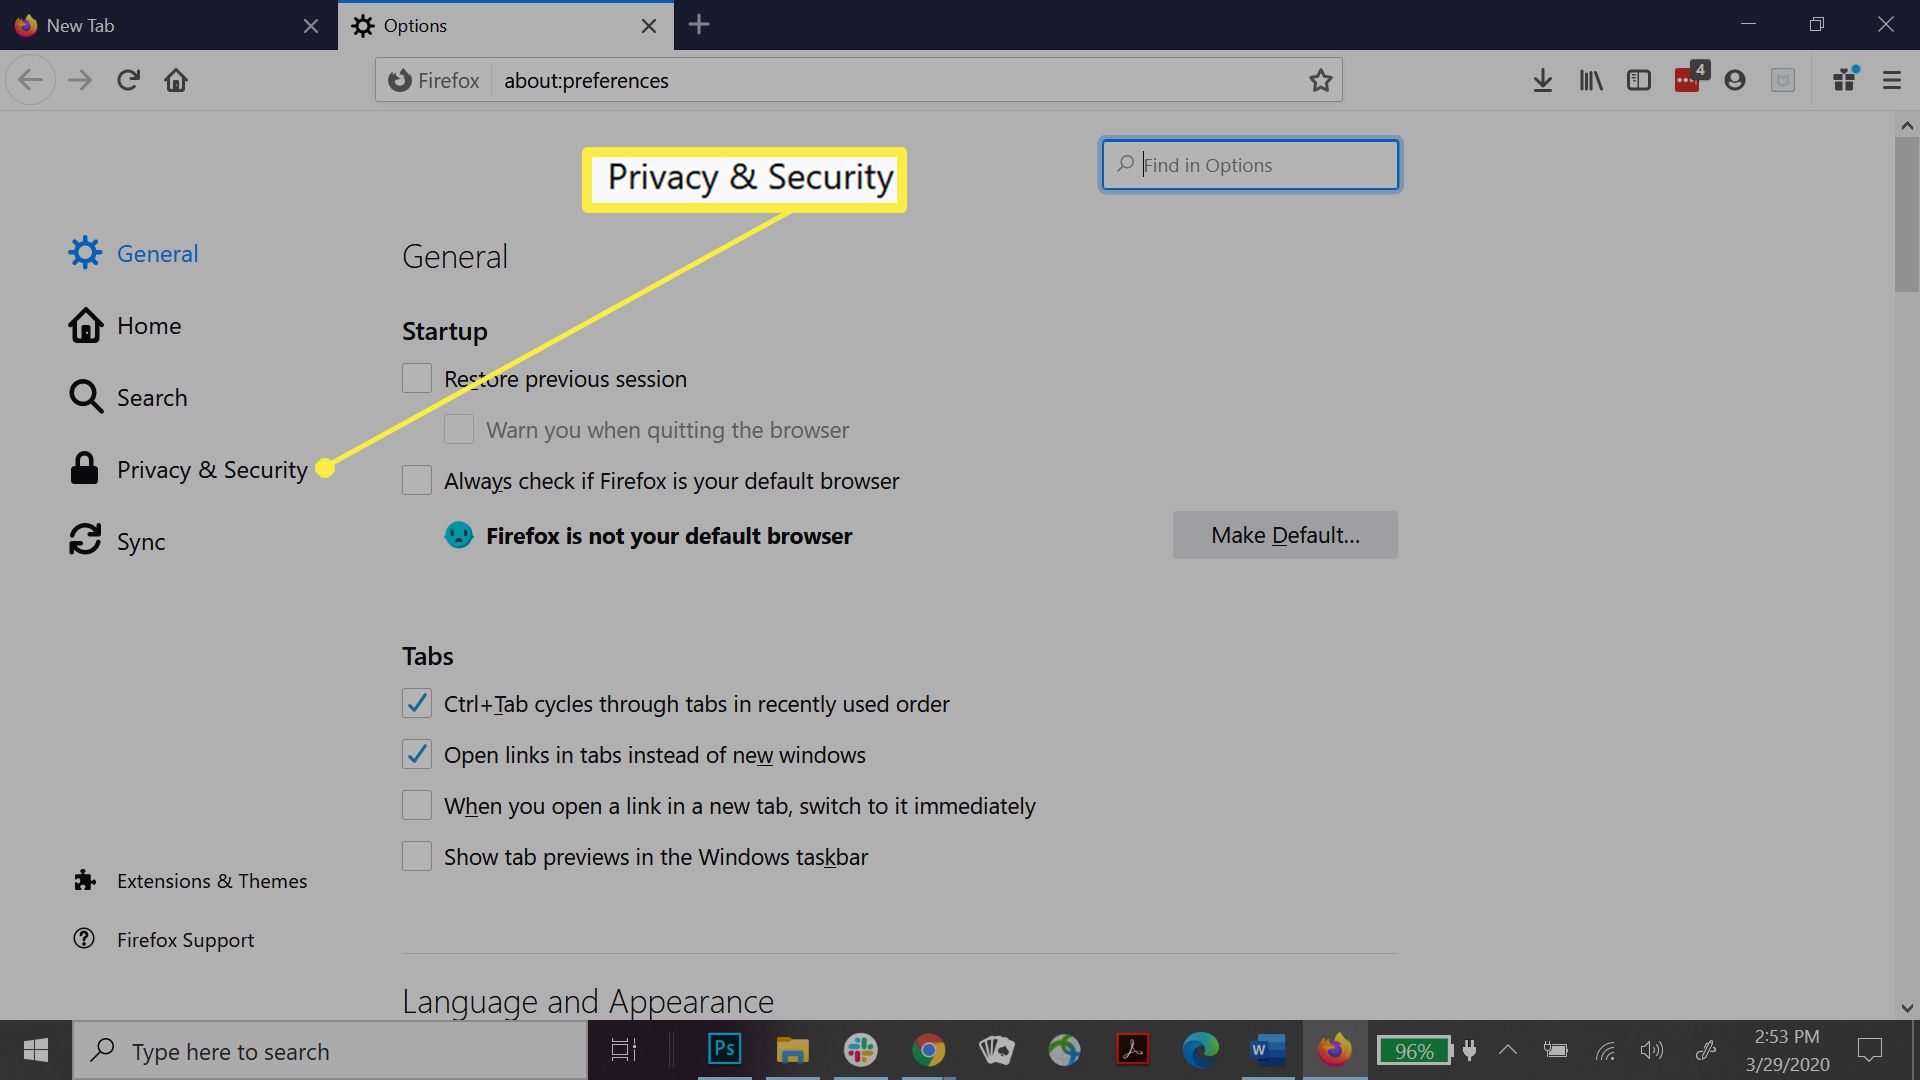 Firefox sekretess- och säkerhetsinställningar